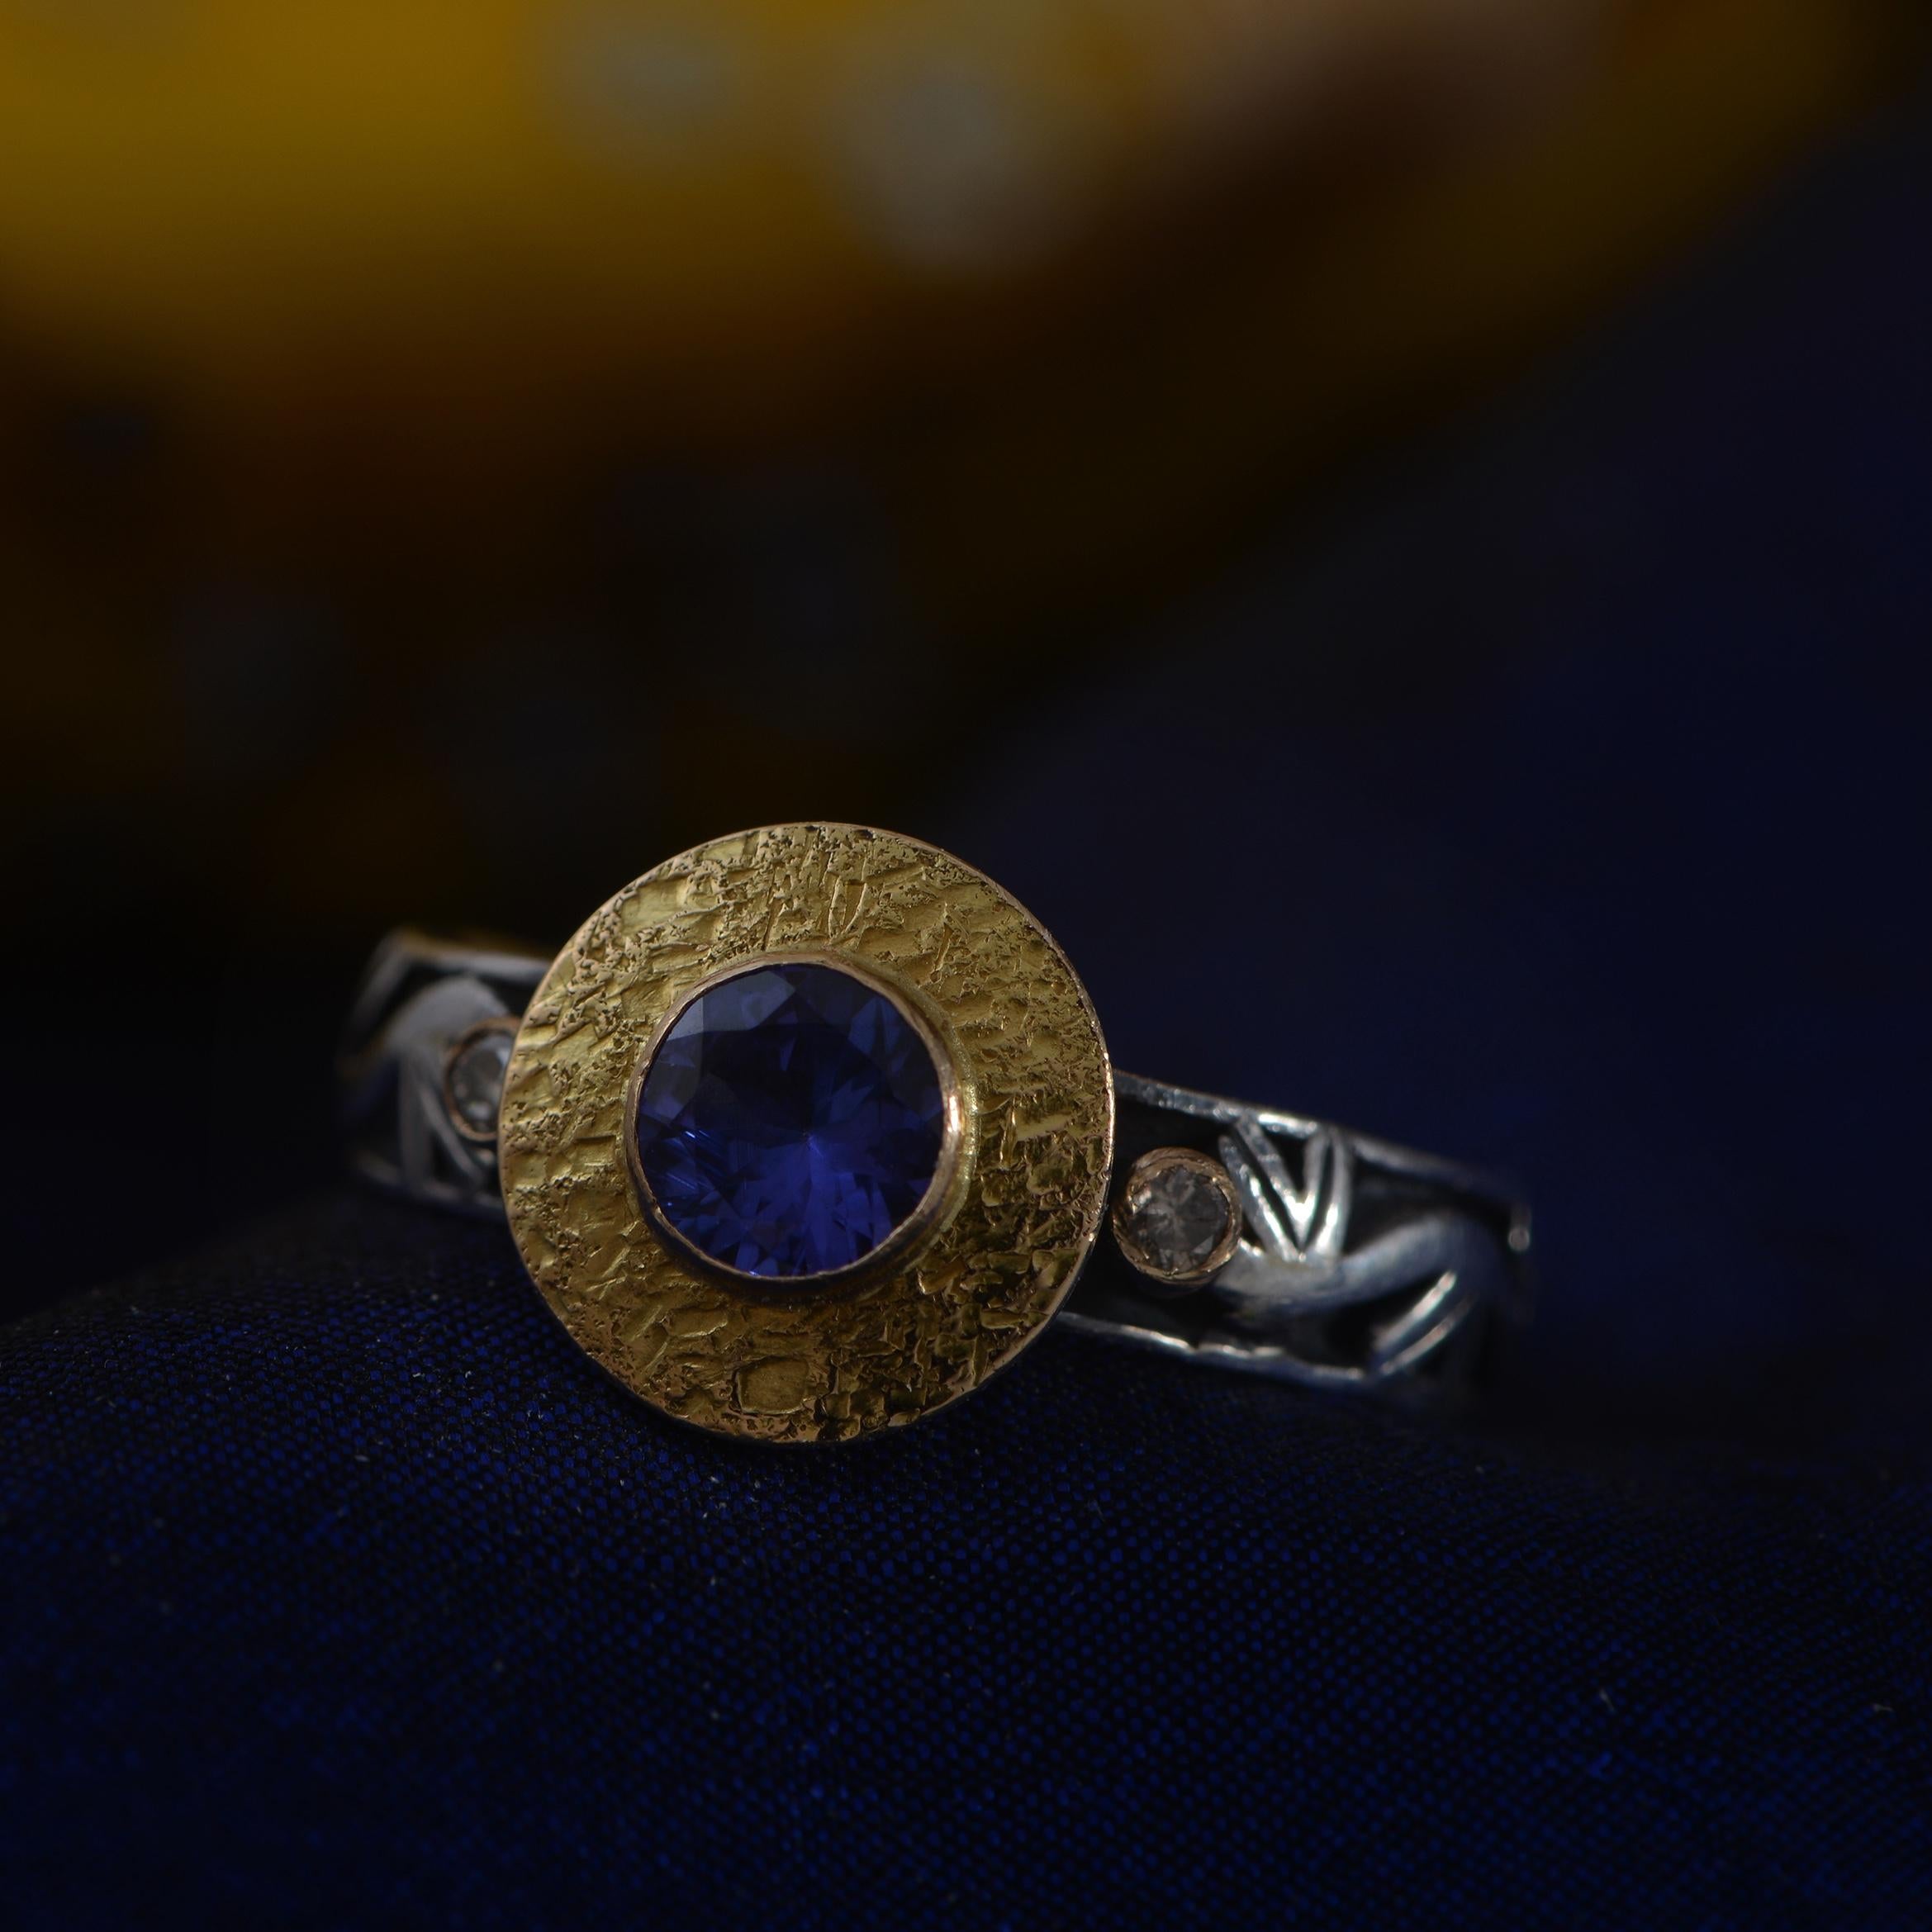 Dieser schöne Tansanit-Ring ist einzigartig. Er wird in unseren Werkstätten handgefertigt und zeichnet sich durch einen zentralen Tansanit aus, der in 18 Karat Gold gefasst ist, und wird von zwei Diamanten im Vollschliff flankiert, die ebenfalls in